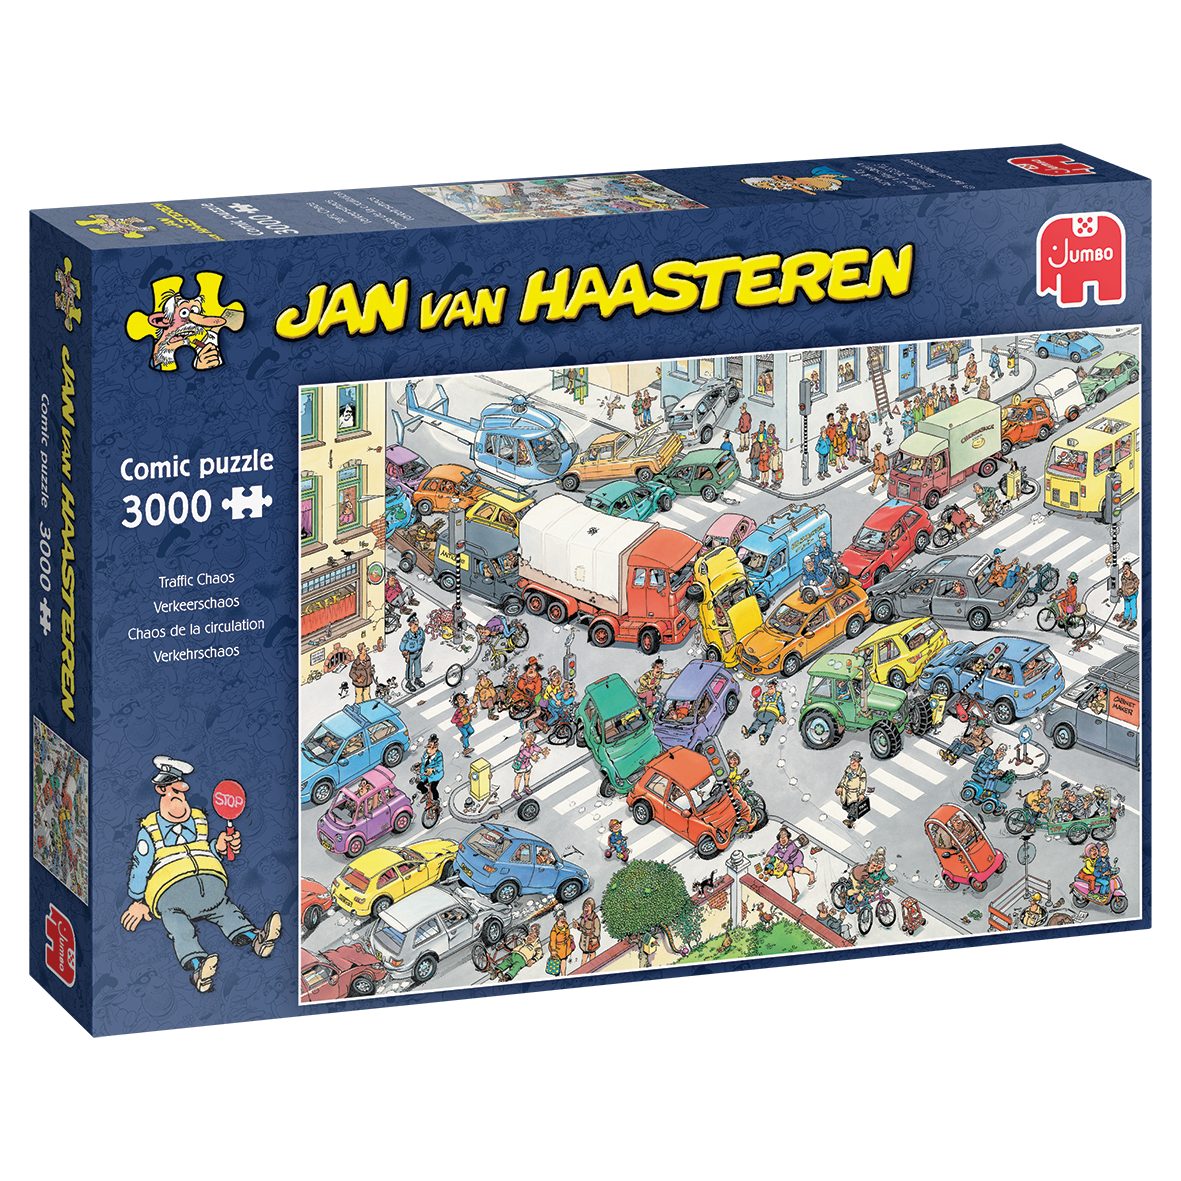 Spiele Puzzleteile, Jan Verkehrschaos Jumbo Puzzle in Haasteren Europe van Made 3000 Puzzle,